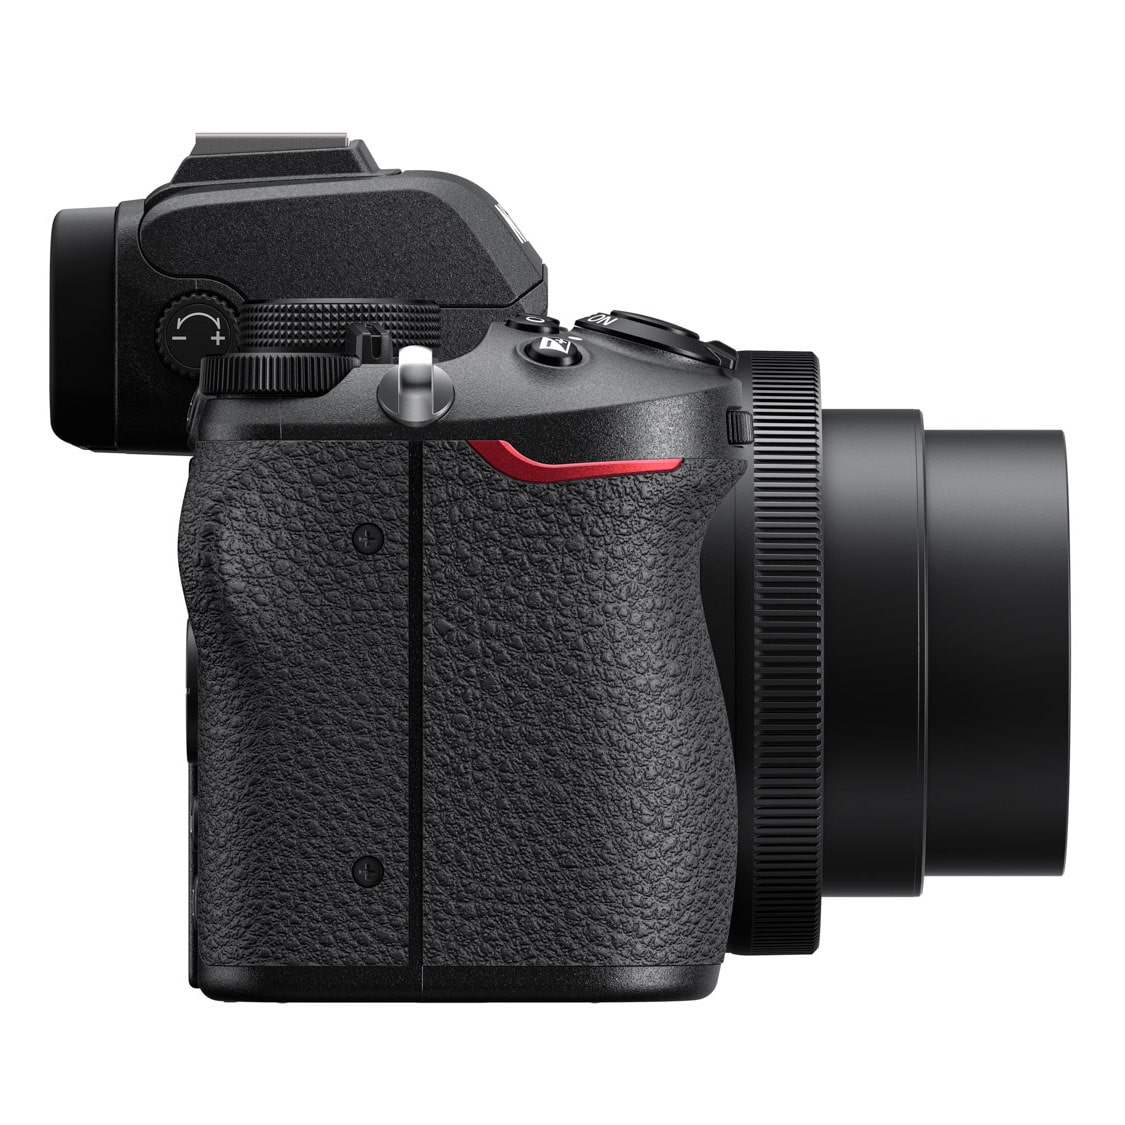 Nikon(ニコン) Z 50 ミラーレスカメラ 16-50 VRレンズキット(Z 50 16 